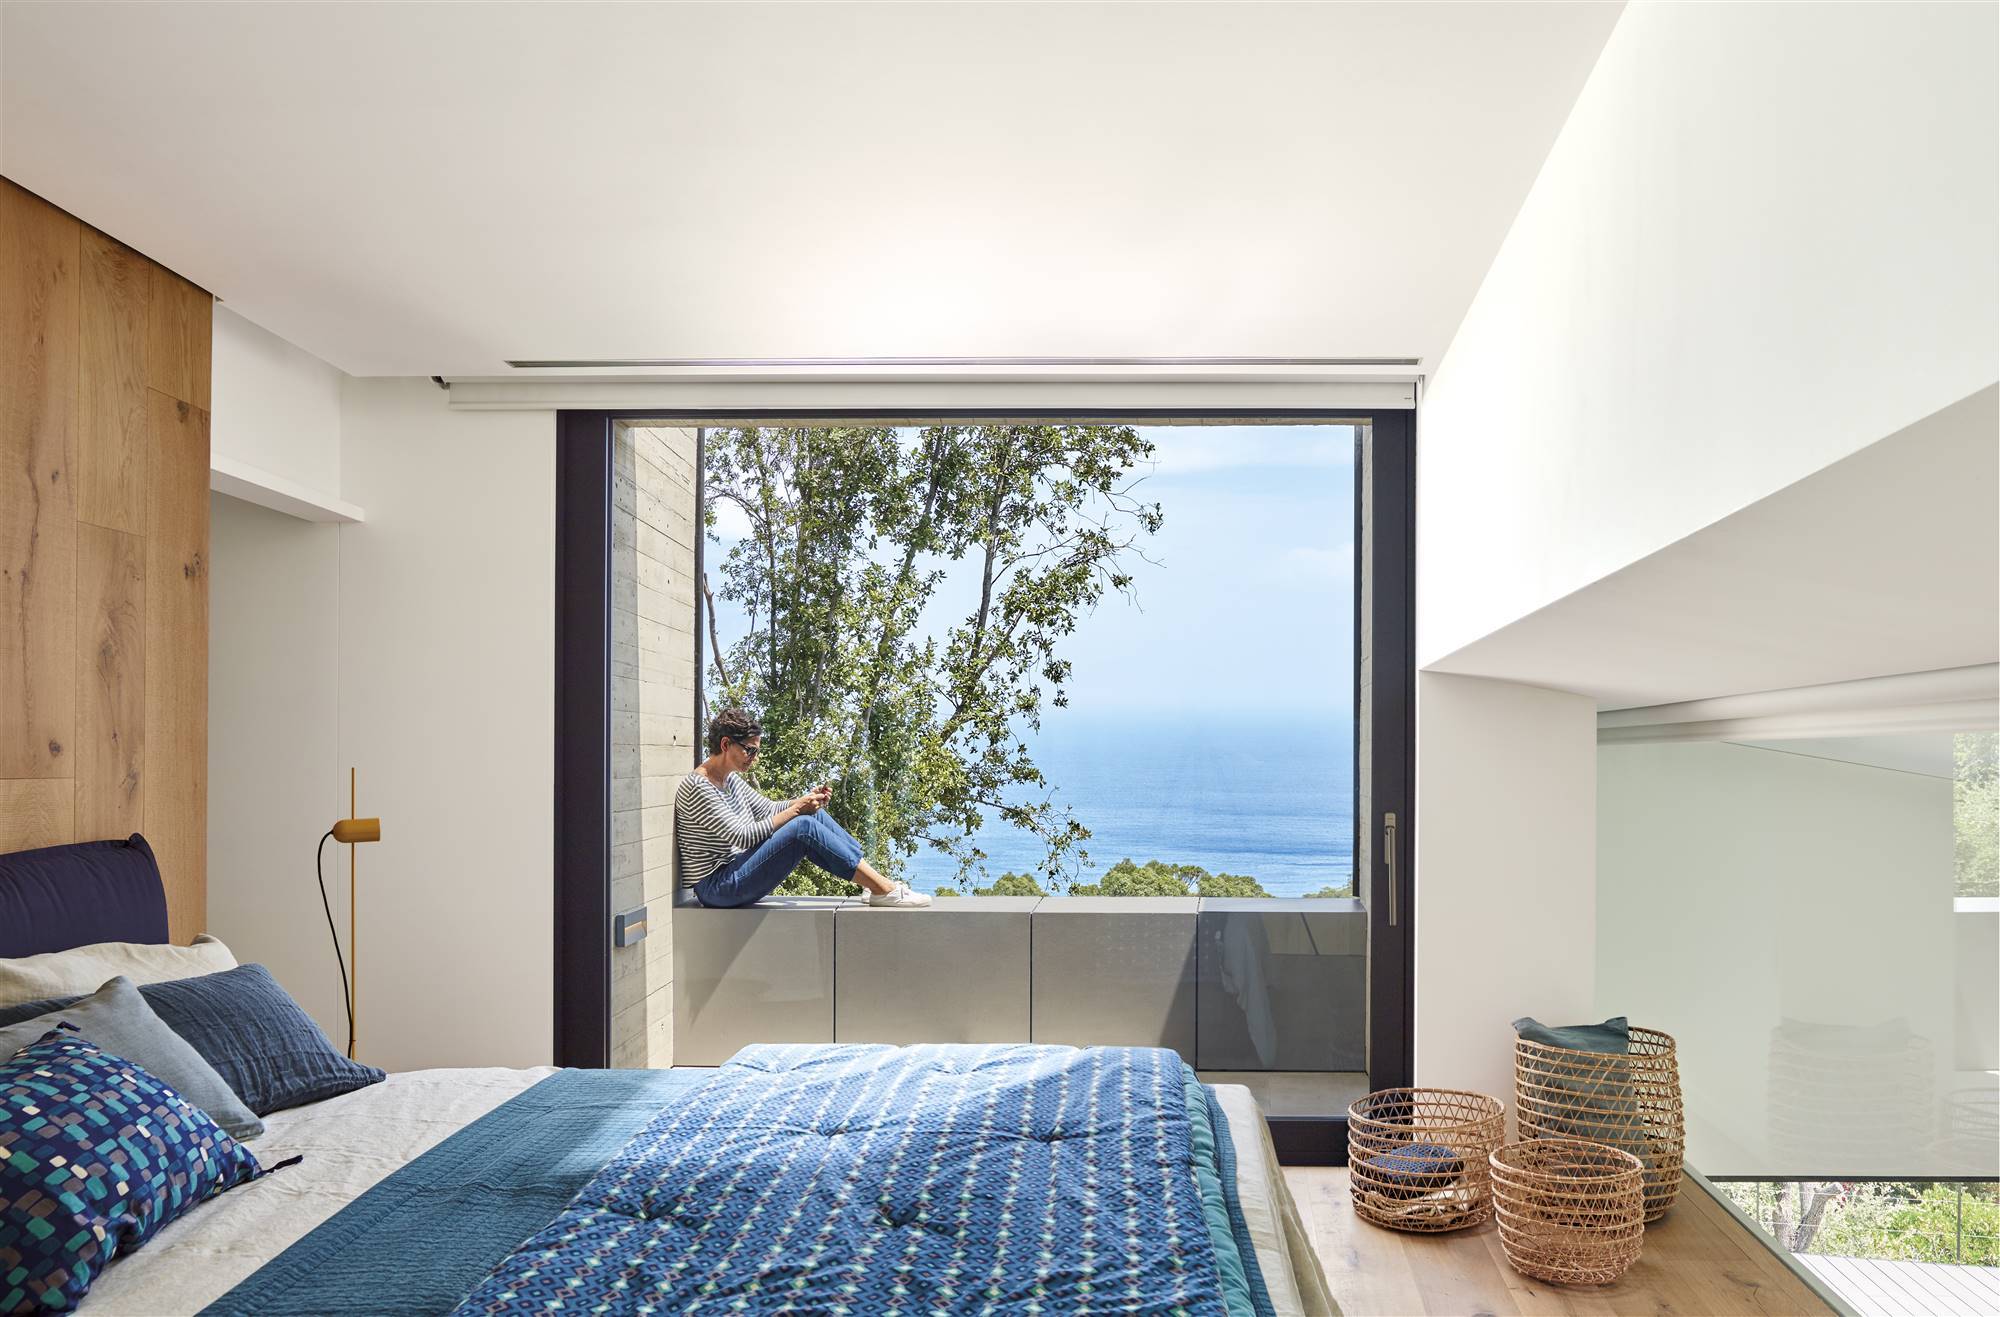 Dormitorio veraniego en tonos azules y blancos con un gran ventanal con vistas al mar